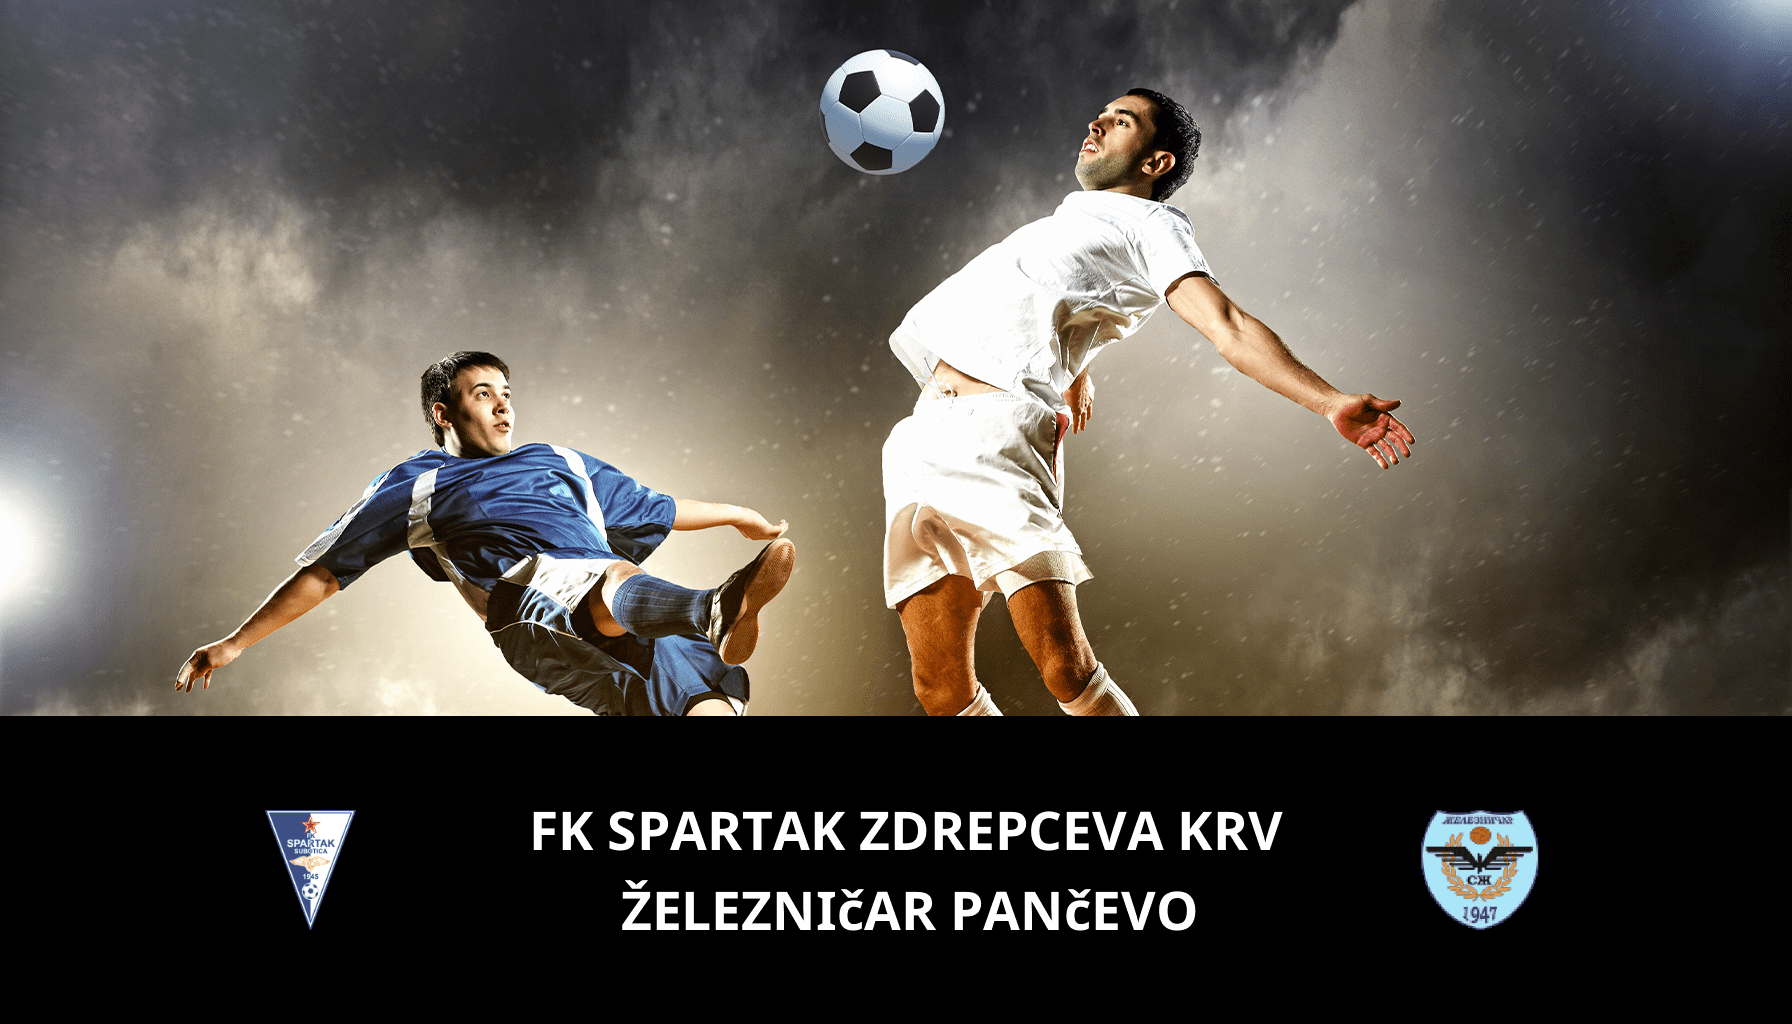 Prediction for FK Spartak Zdrepceva KRV VS Železničar Pančevo on 01/05/2024 Analysis of the match